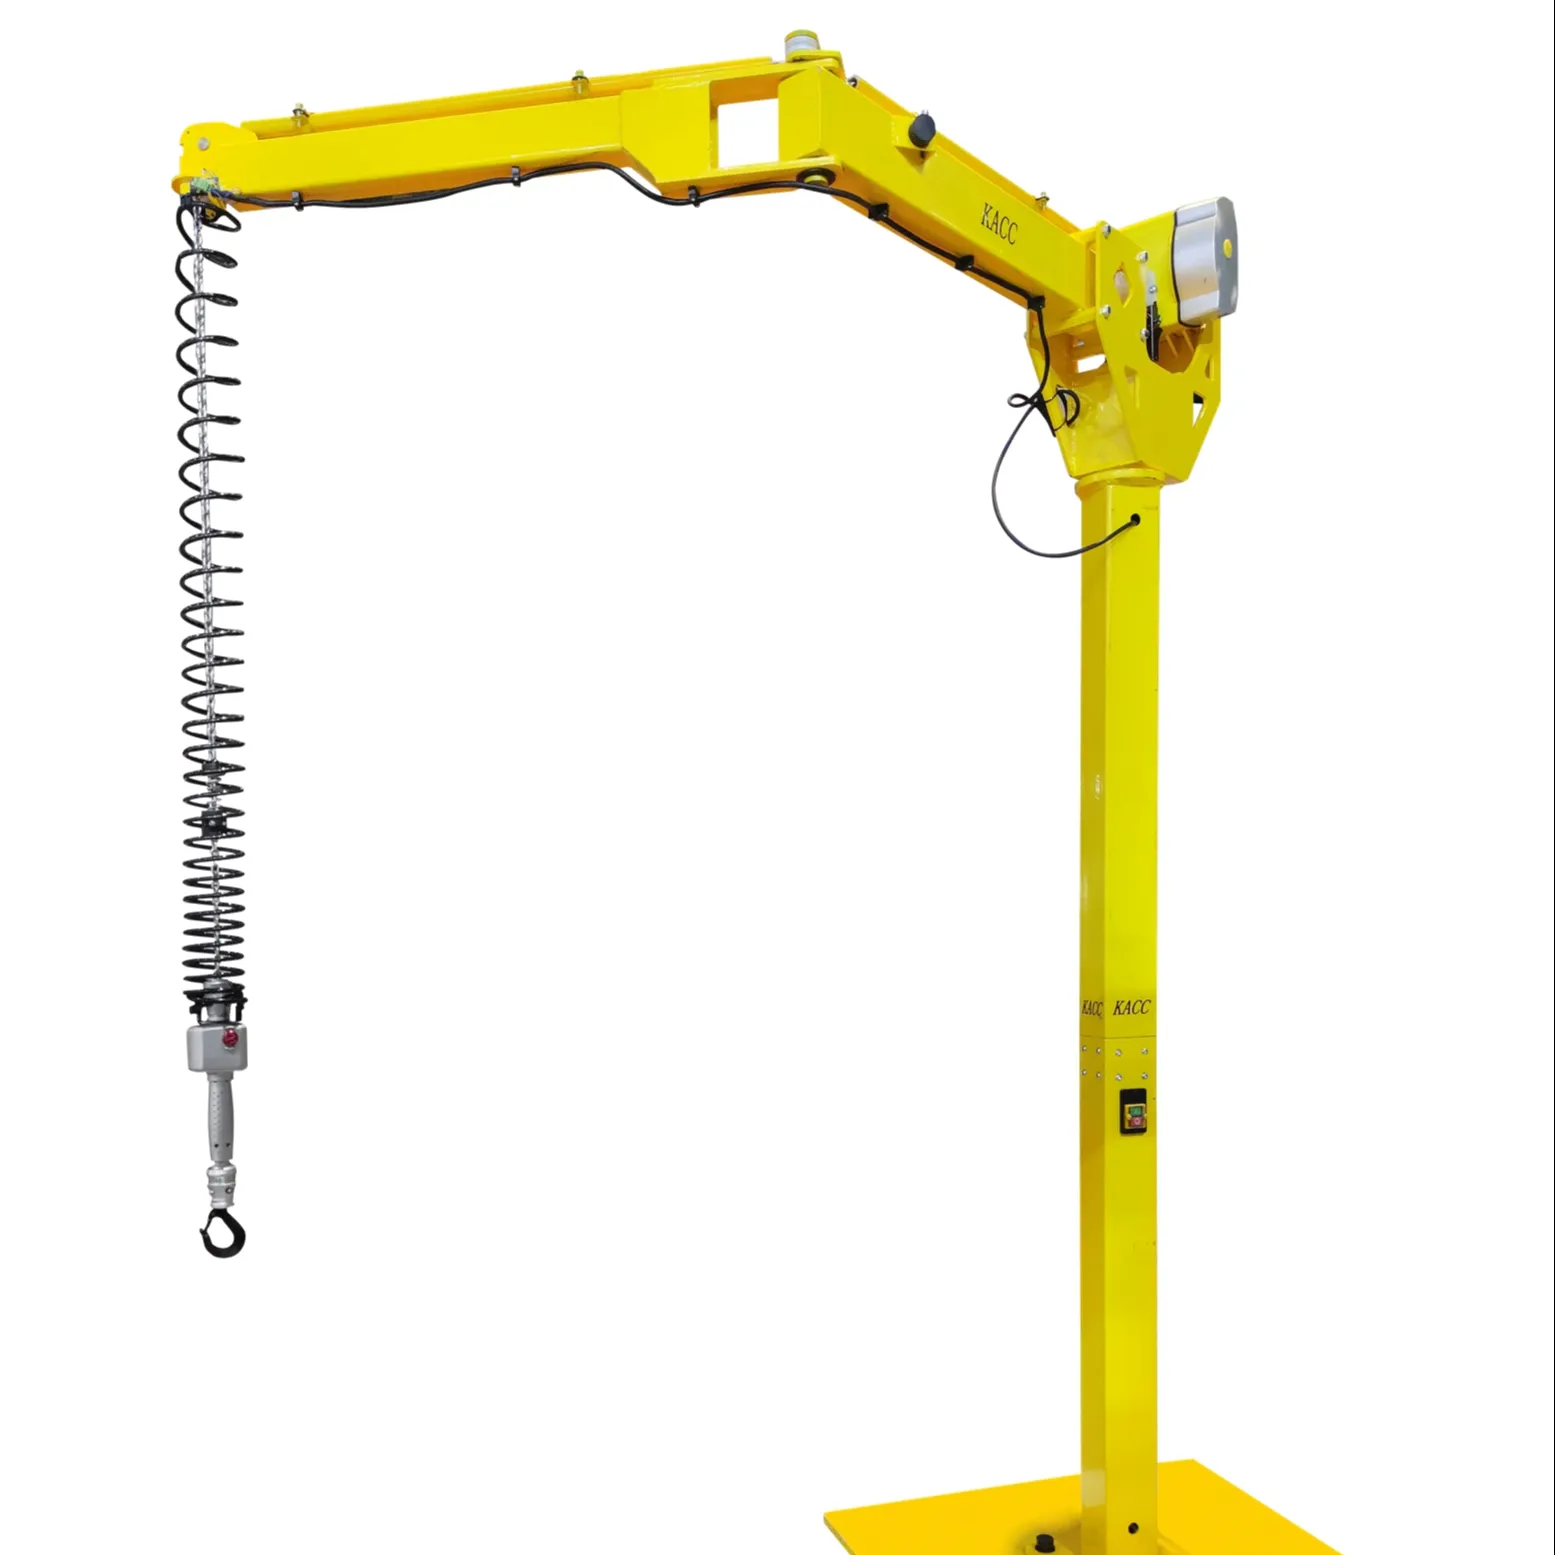 KACC Manufacturer 125kg 250kg 500kg lifting chain hoist crane 220V 380V with hand hold